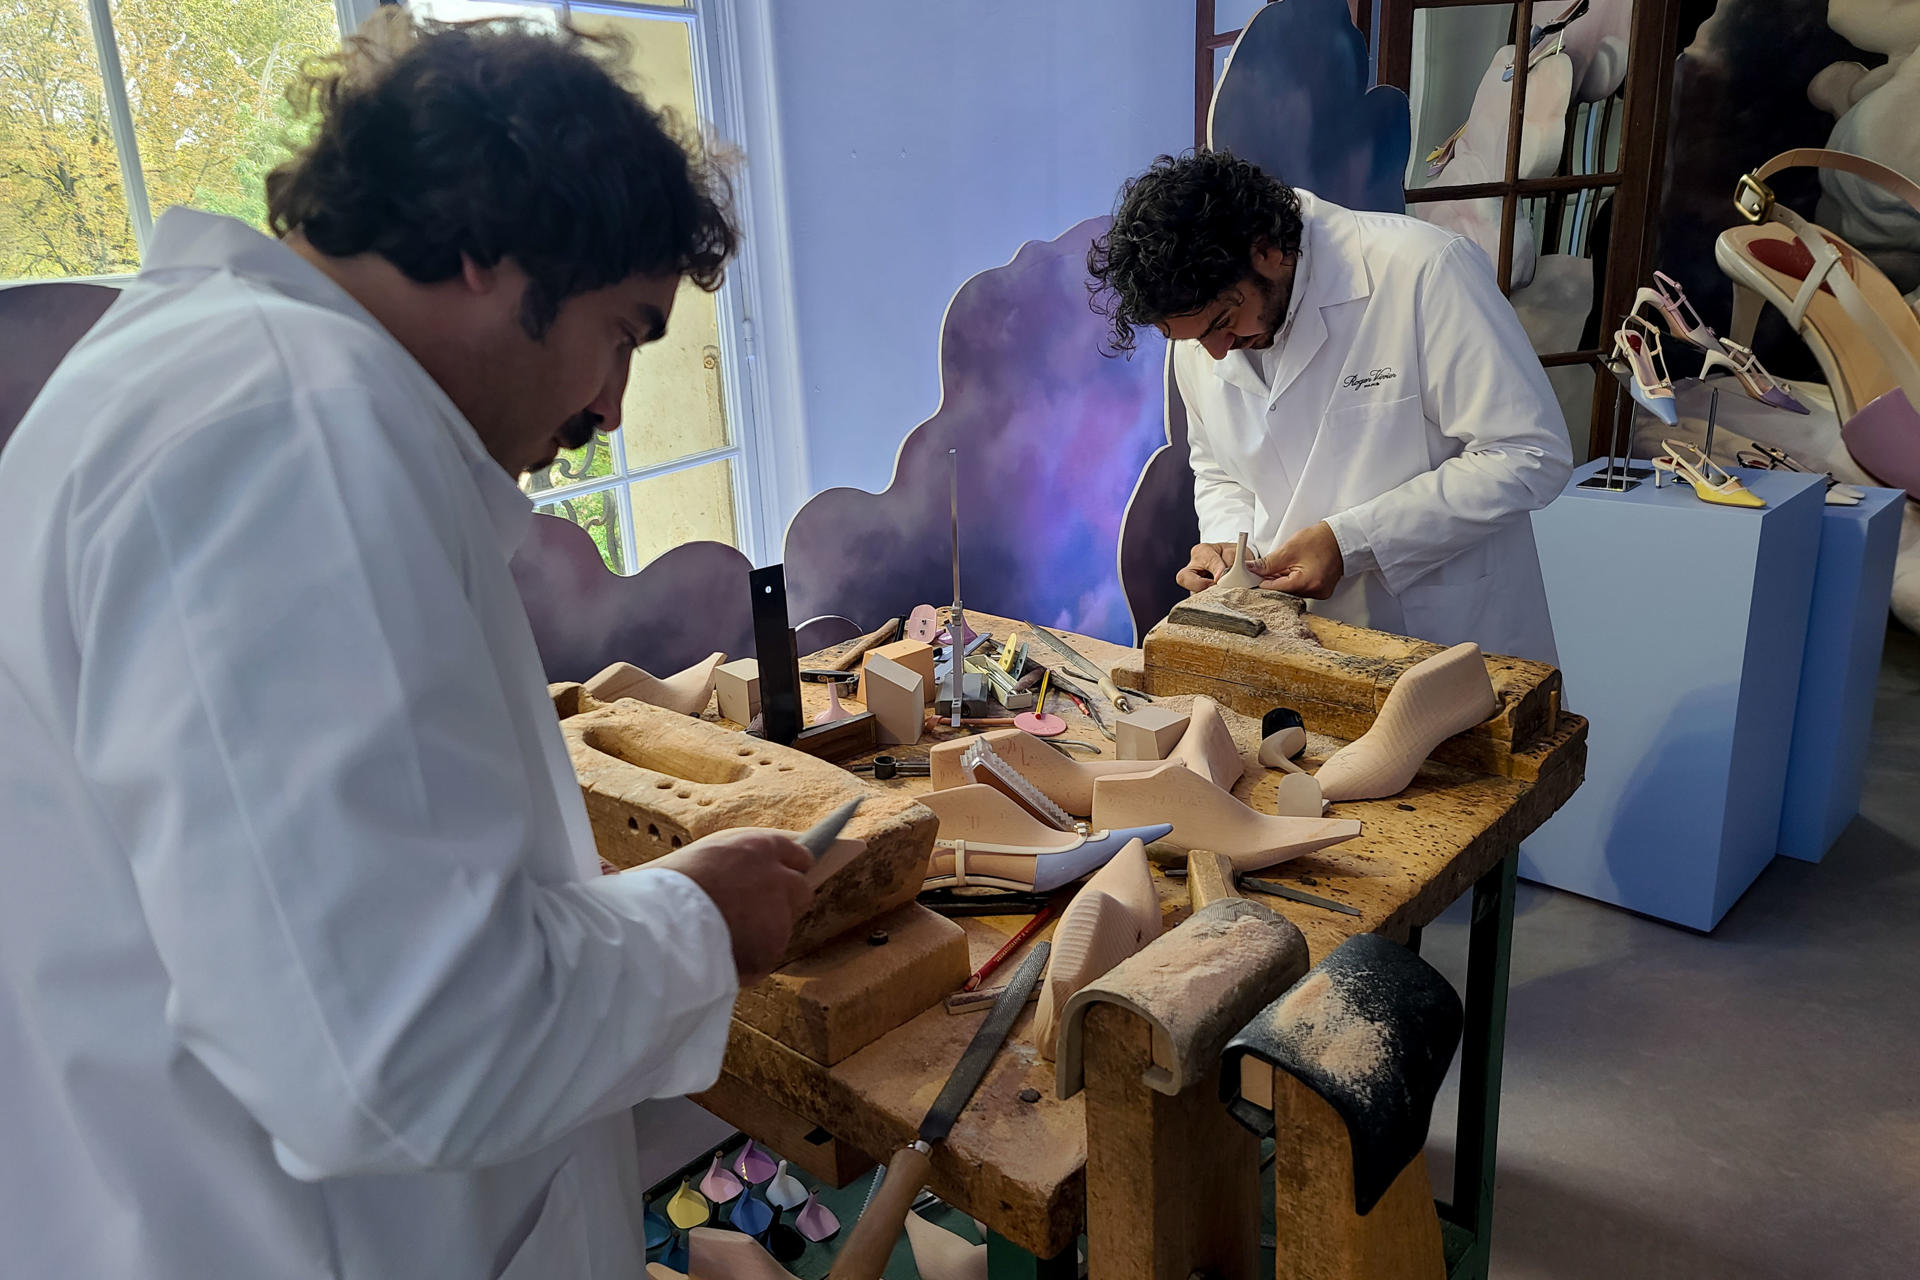 Dos hombres muestran el proceso de confección de los zapatos de la casa Roger Vivier, que presenta su nueva colección de calzado y bolsos durante la Semana de la Moda de París, este jueves en la capital francesa. EFE/ Edgar Sapiña Manchado